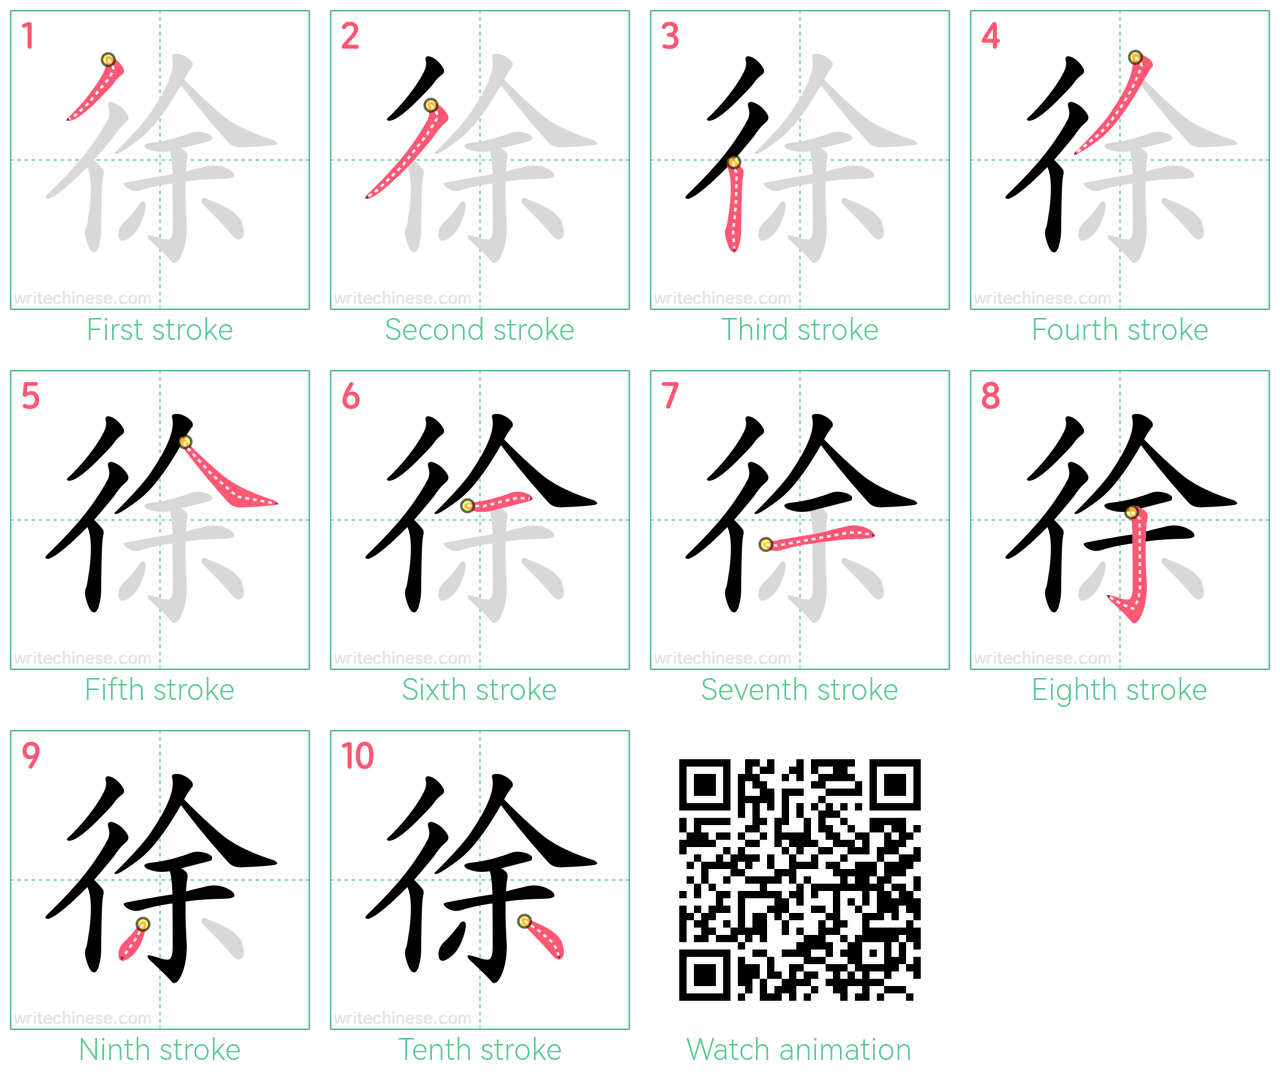 徐 step-by-step stroke order diagrams